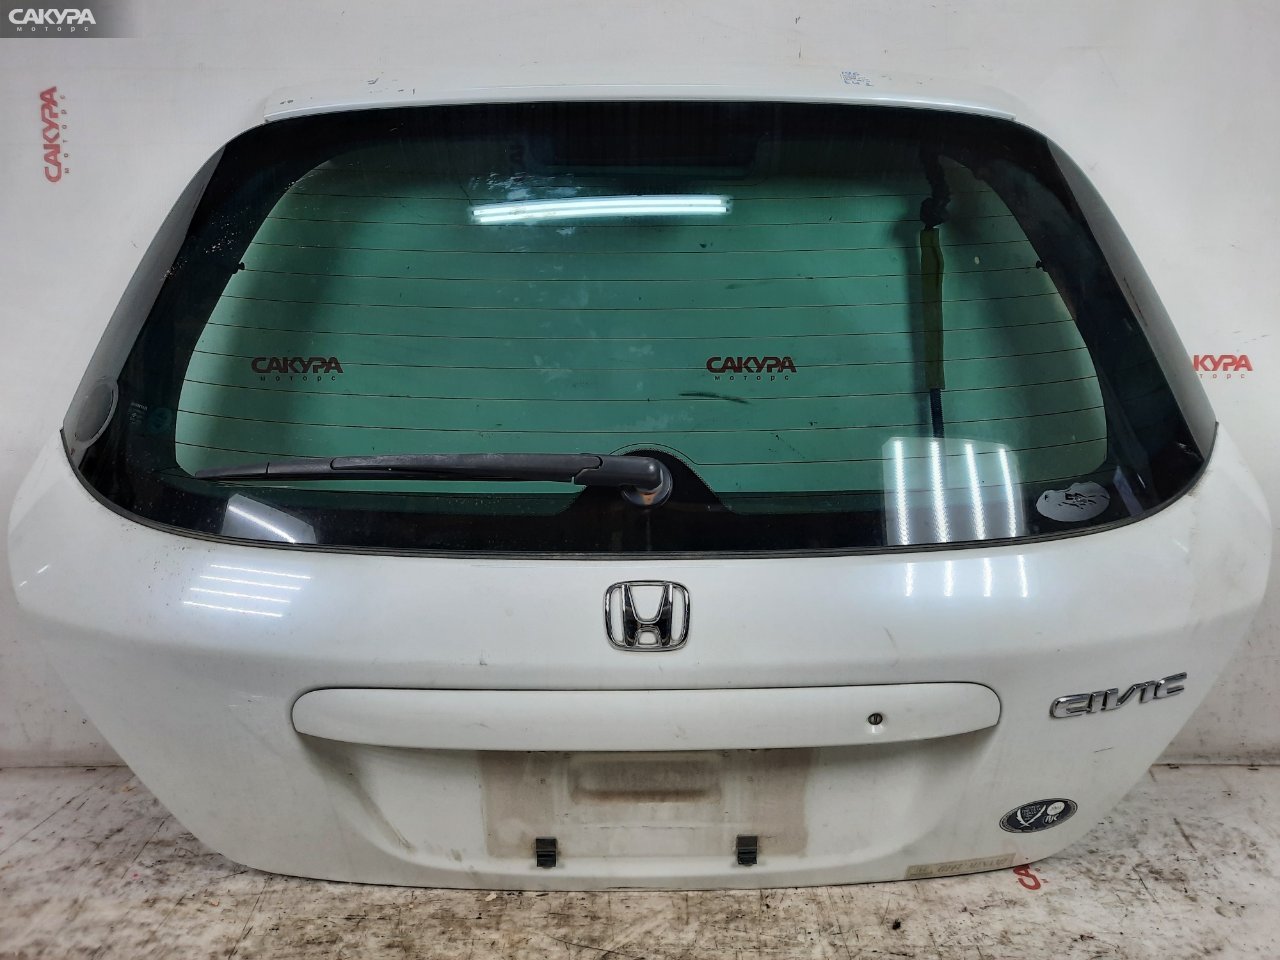 Дверь задняя багажника Honda Civic EU1 D15B: купить в Сакура Красноярск.